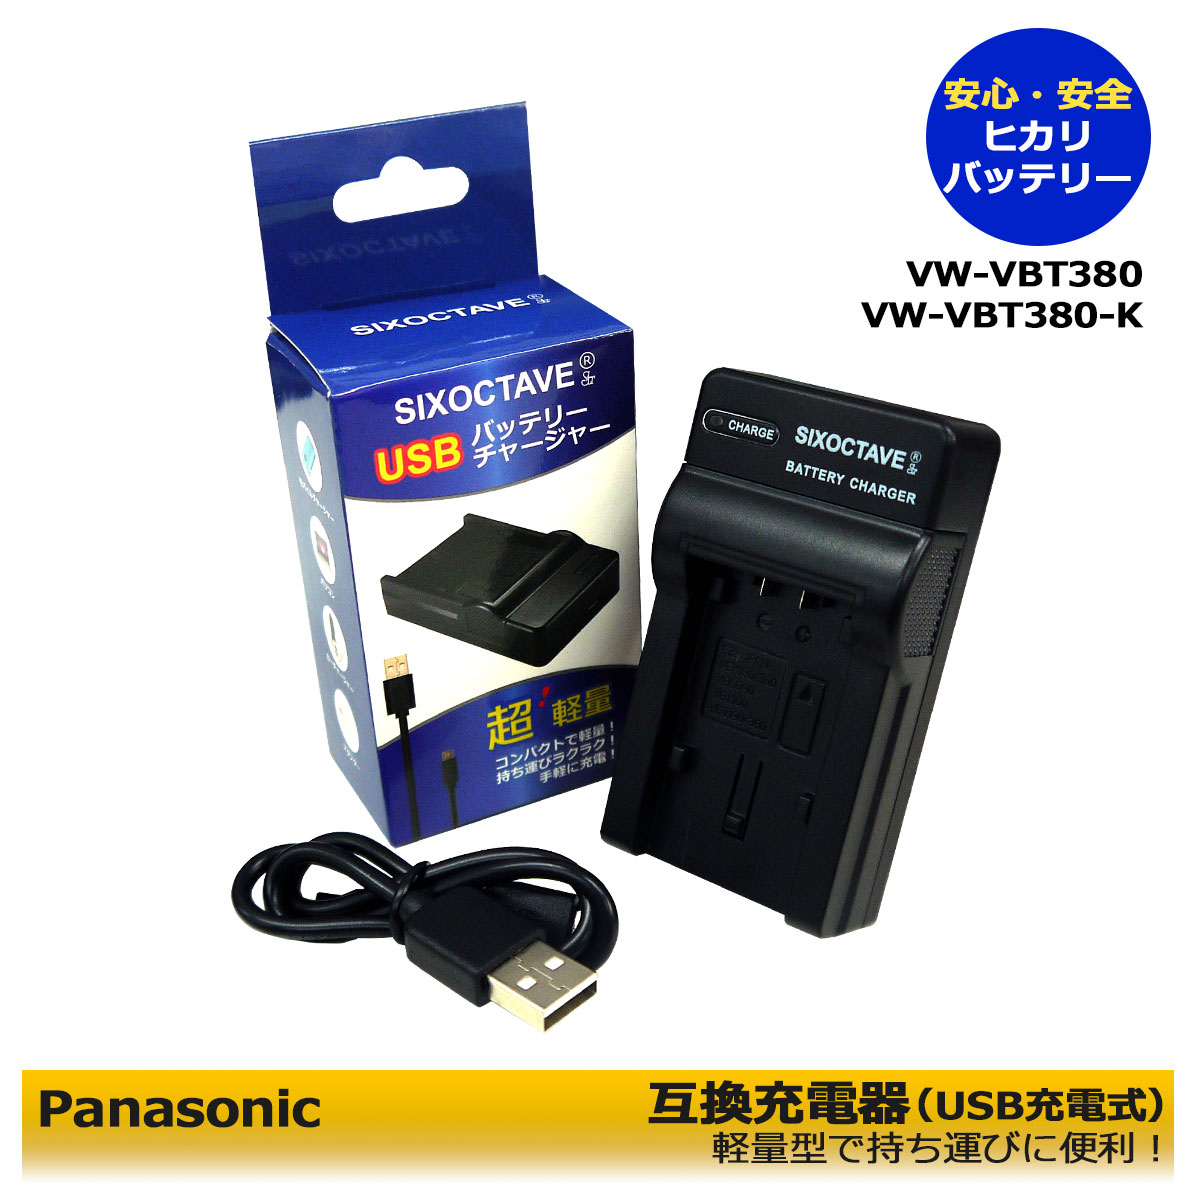 VW-VBT380【あす楽対応】 Panasonic VW-BC10-K 互換 USBチャージャー デジタルビデオカメラ用 アクセサリー HC-V720M / HC-V750M / HC-VX980M / HC-VX985M / HC-VX990M / HC-VX992M / HC-W570M / HC-W580M / HC-W585M / HC-W590M / HC-V495M 超軽量型